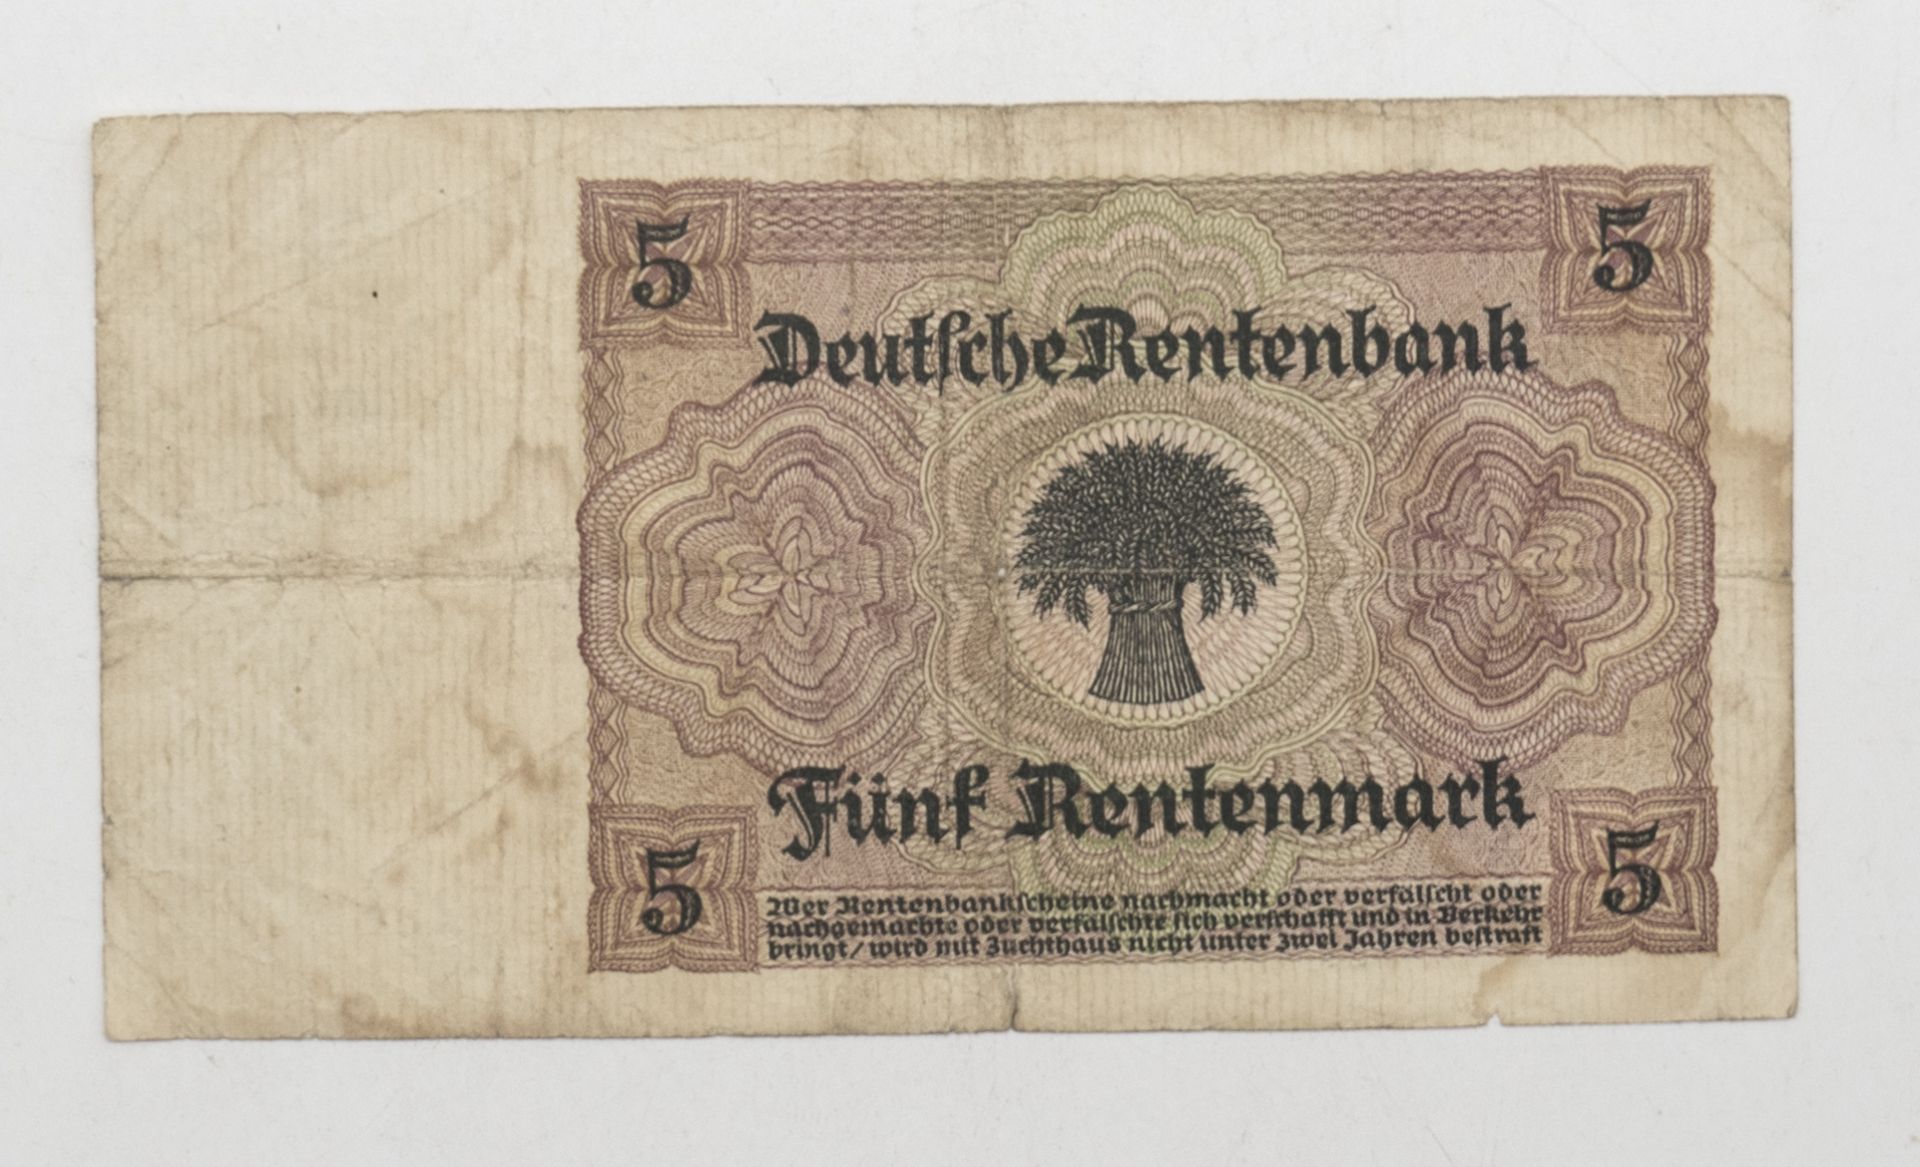 Deutsches Reich 1926, 5 Rentenmark - Banknote. Erhaltung: s. - Bild 2 aus 2